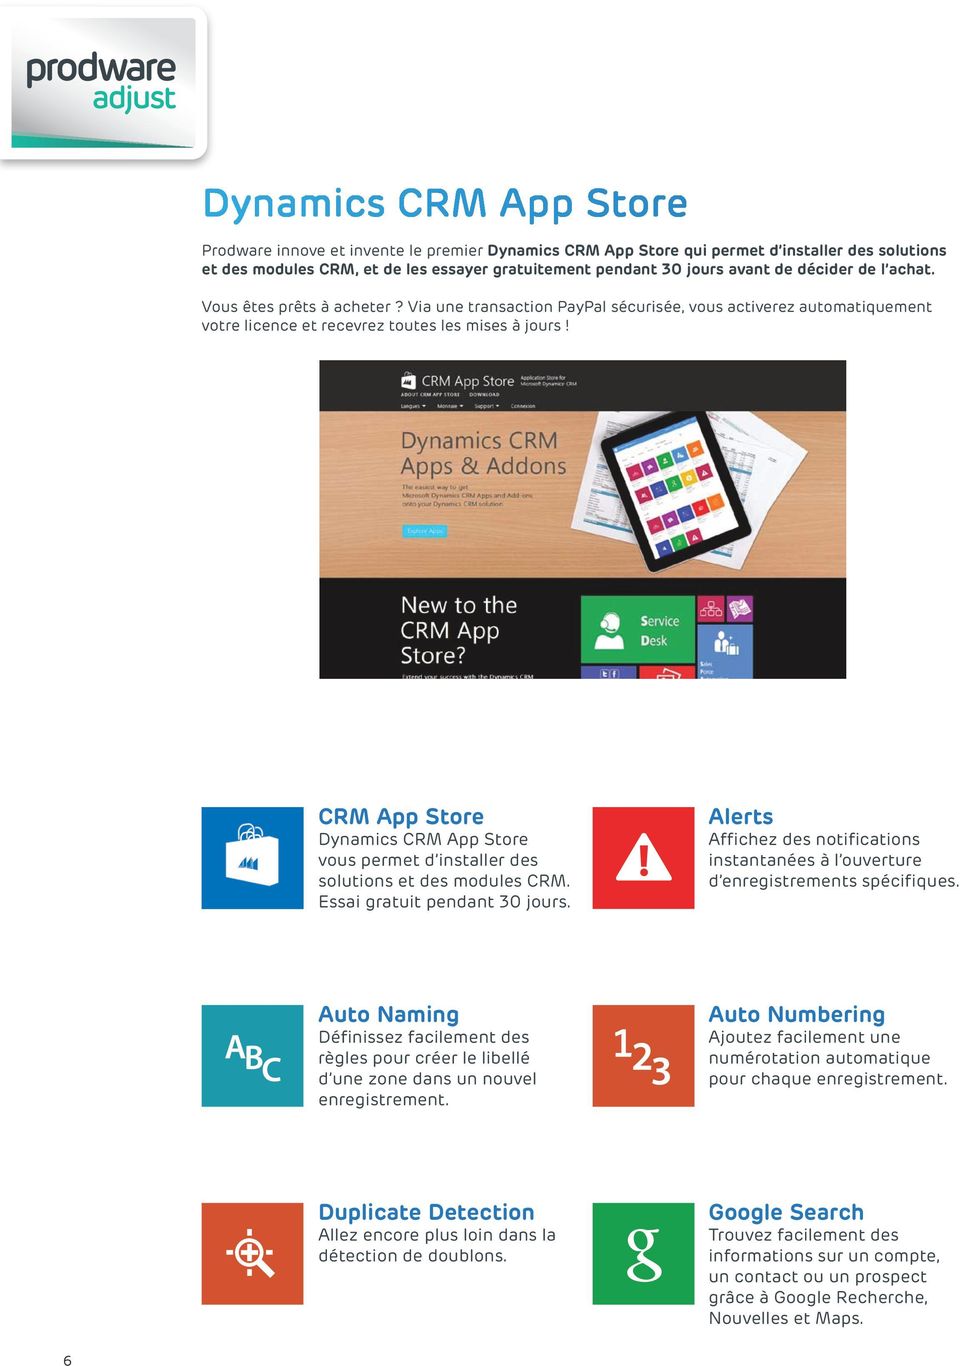 CRM App Store Dynamics CRM App Store vous permet d installer des solutions et des modules CRM. Essai gratuit pendant 30 jours.